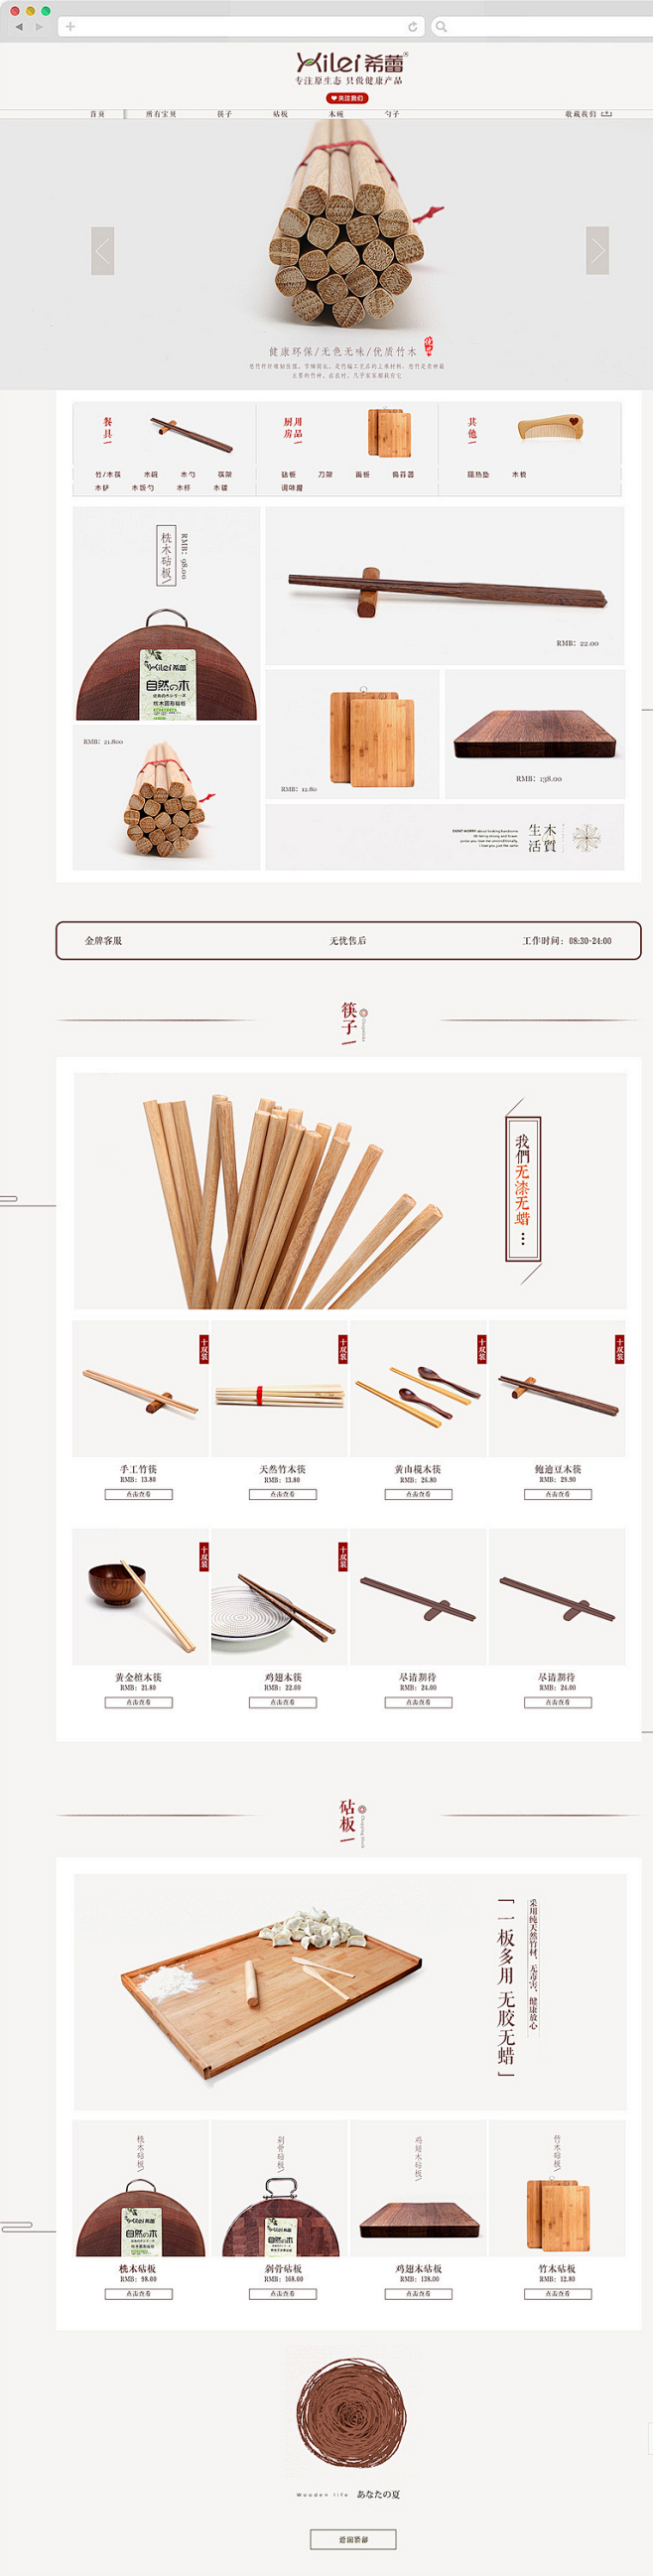 筷子首页设计,原创作品